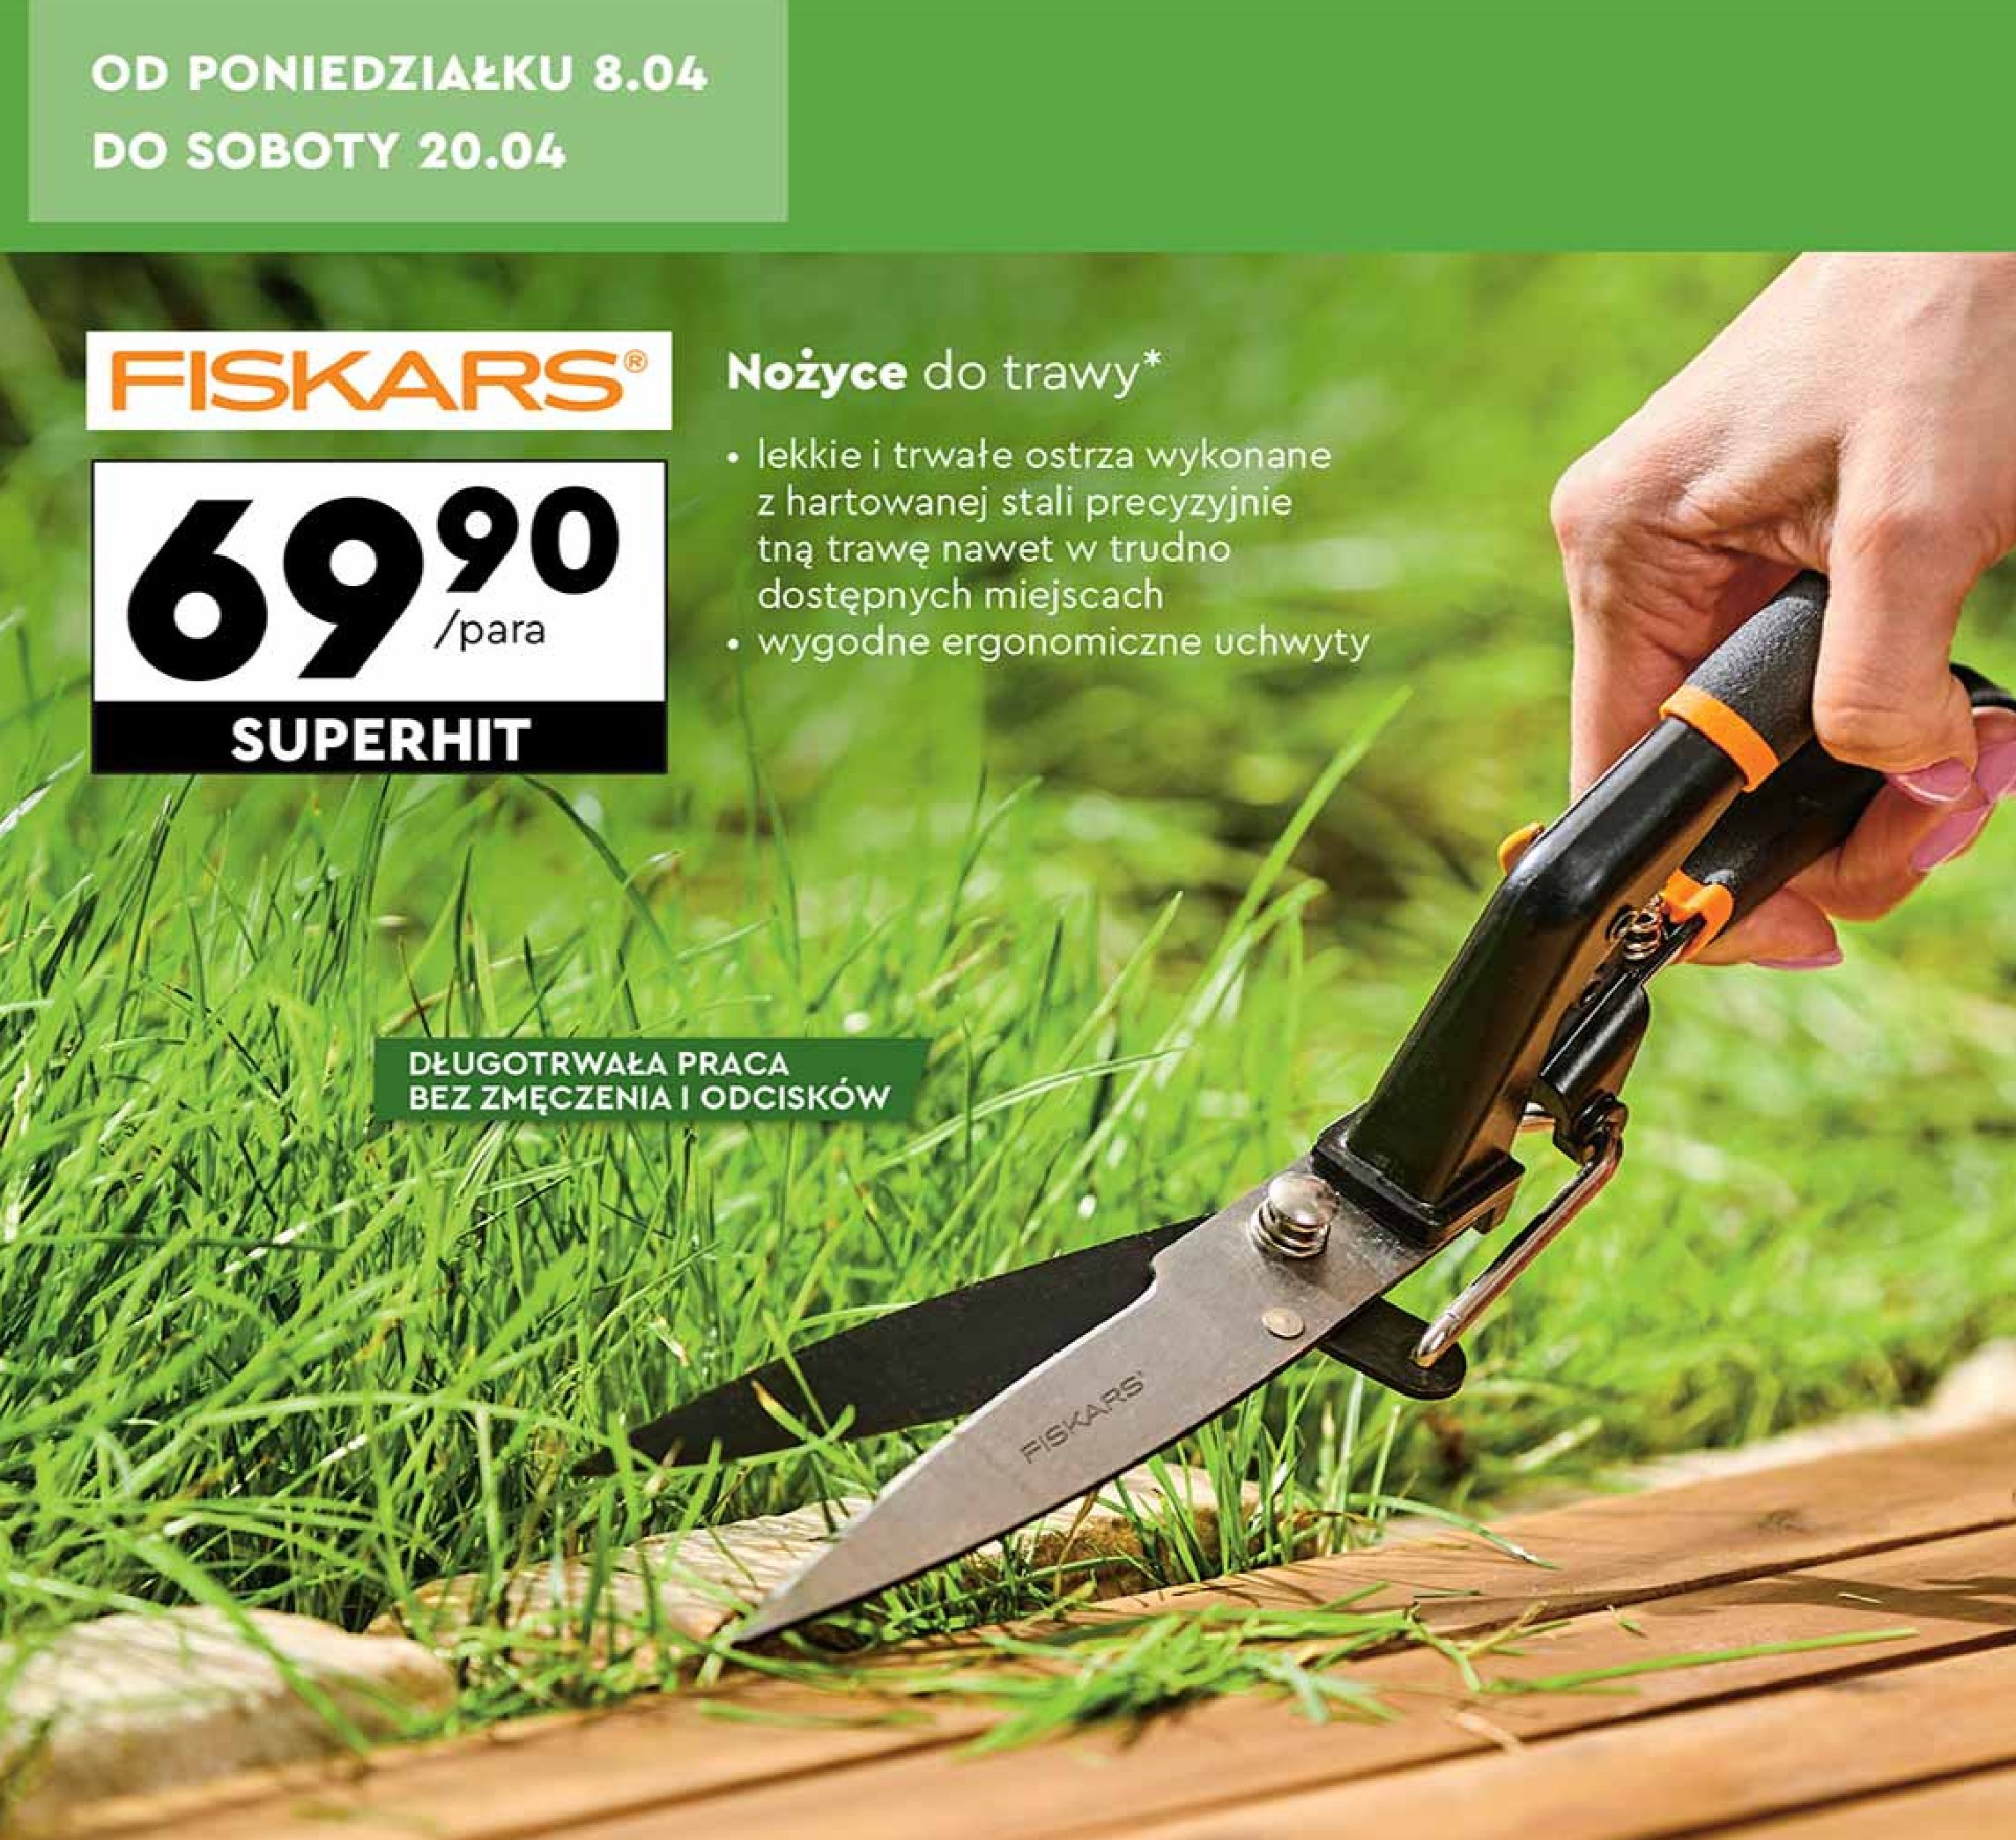 Nożyce do trawy Fiskars promocja